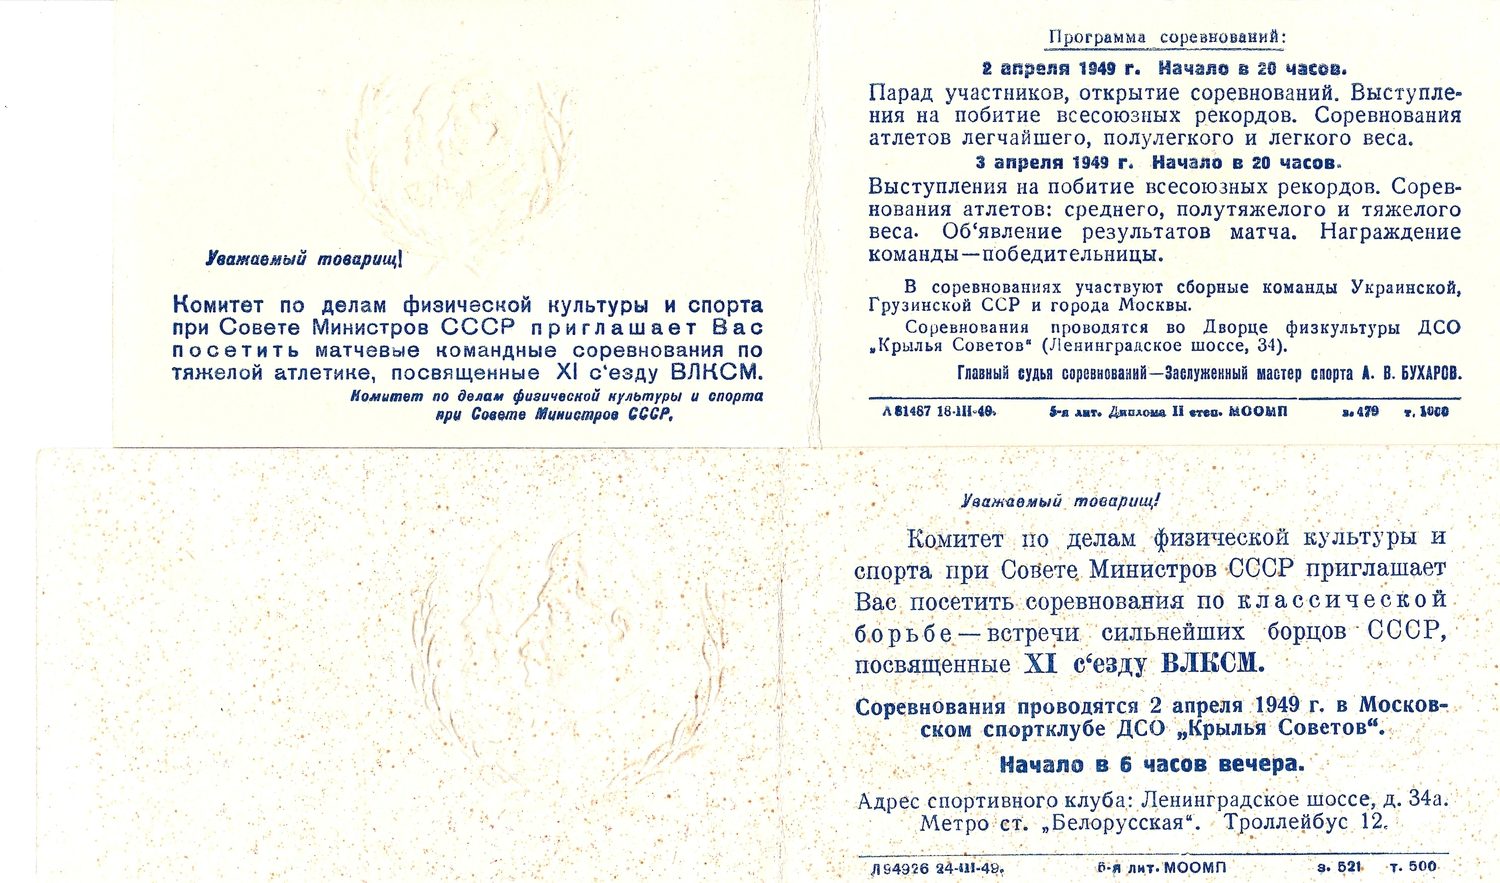 2 пригласительных билета на спортивные соревнования, посвящённые XI съезду ВЛКСМ. 1949.